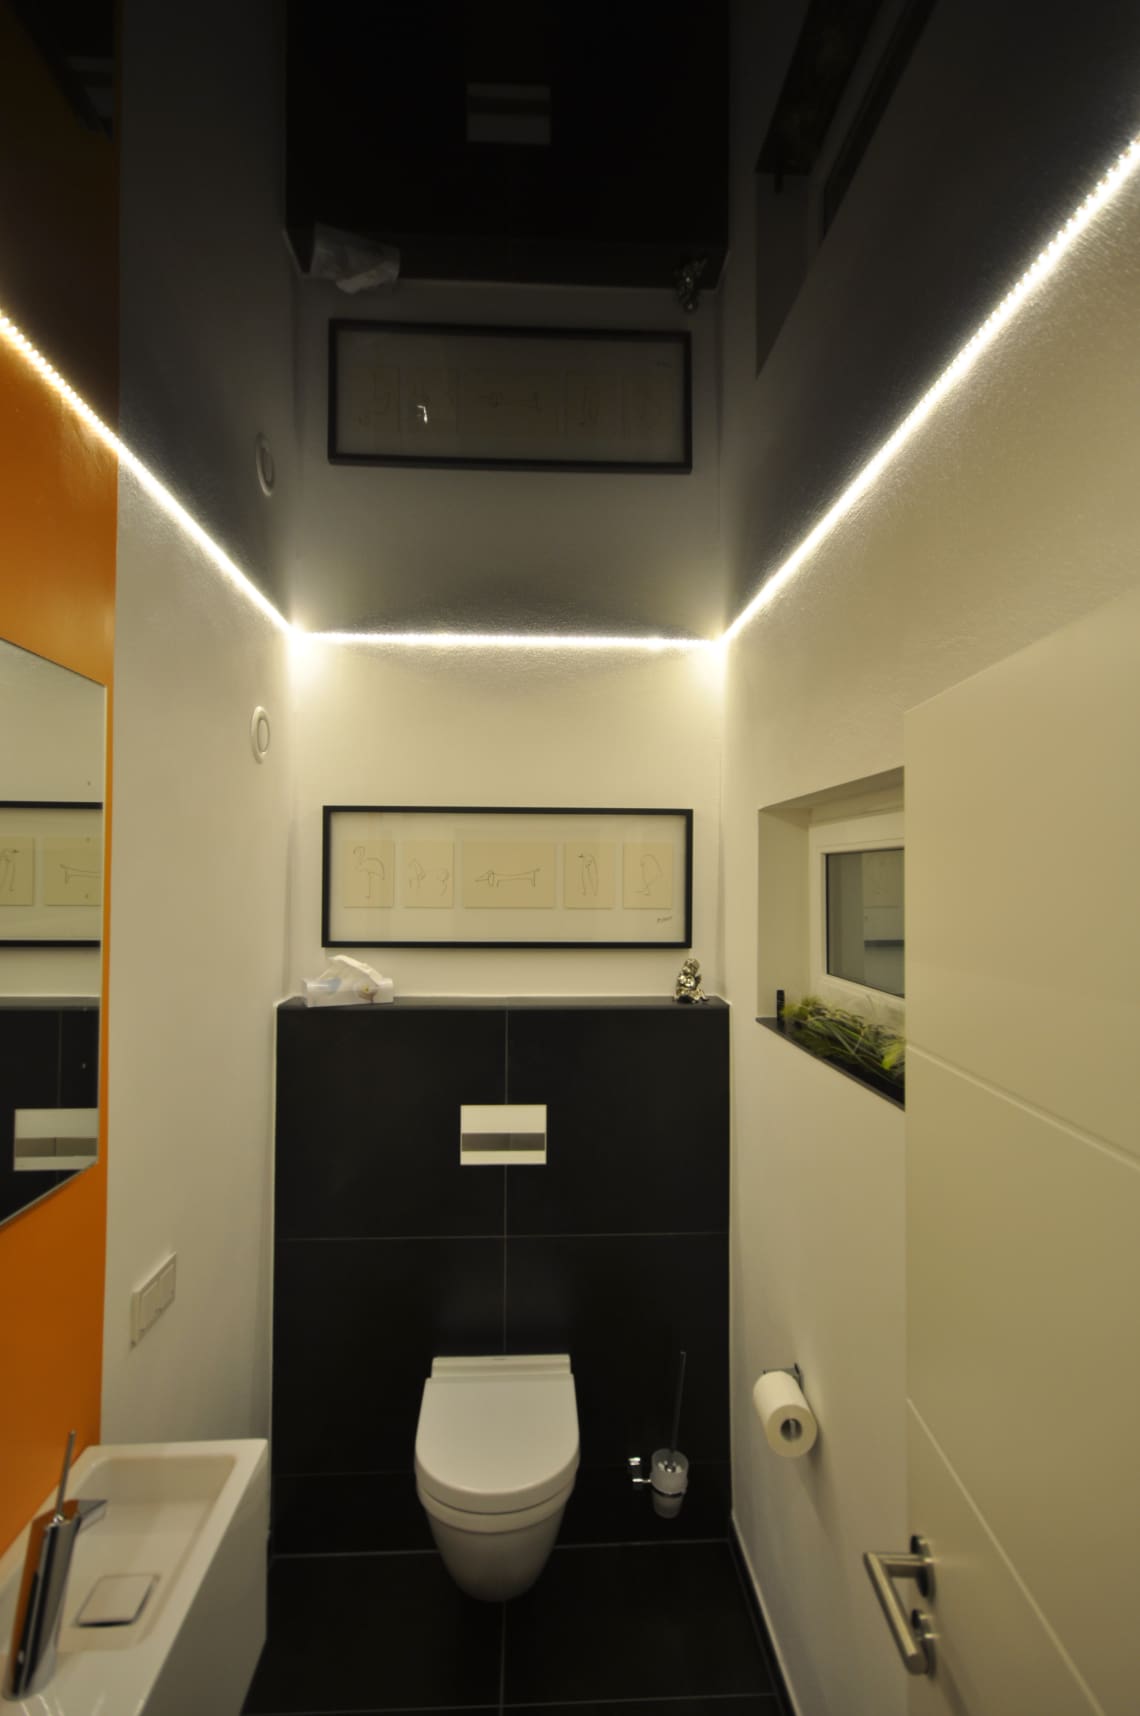 Lackspanndecke im WC in schwarz Hochglanz mit LED-Lichtkanal in der Schattenfuge